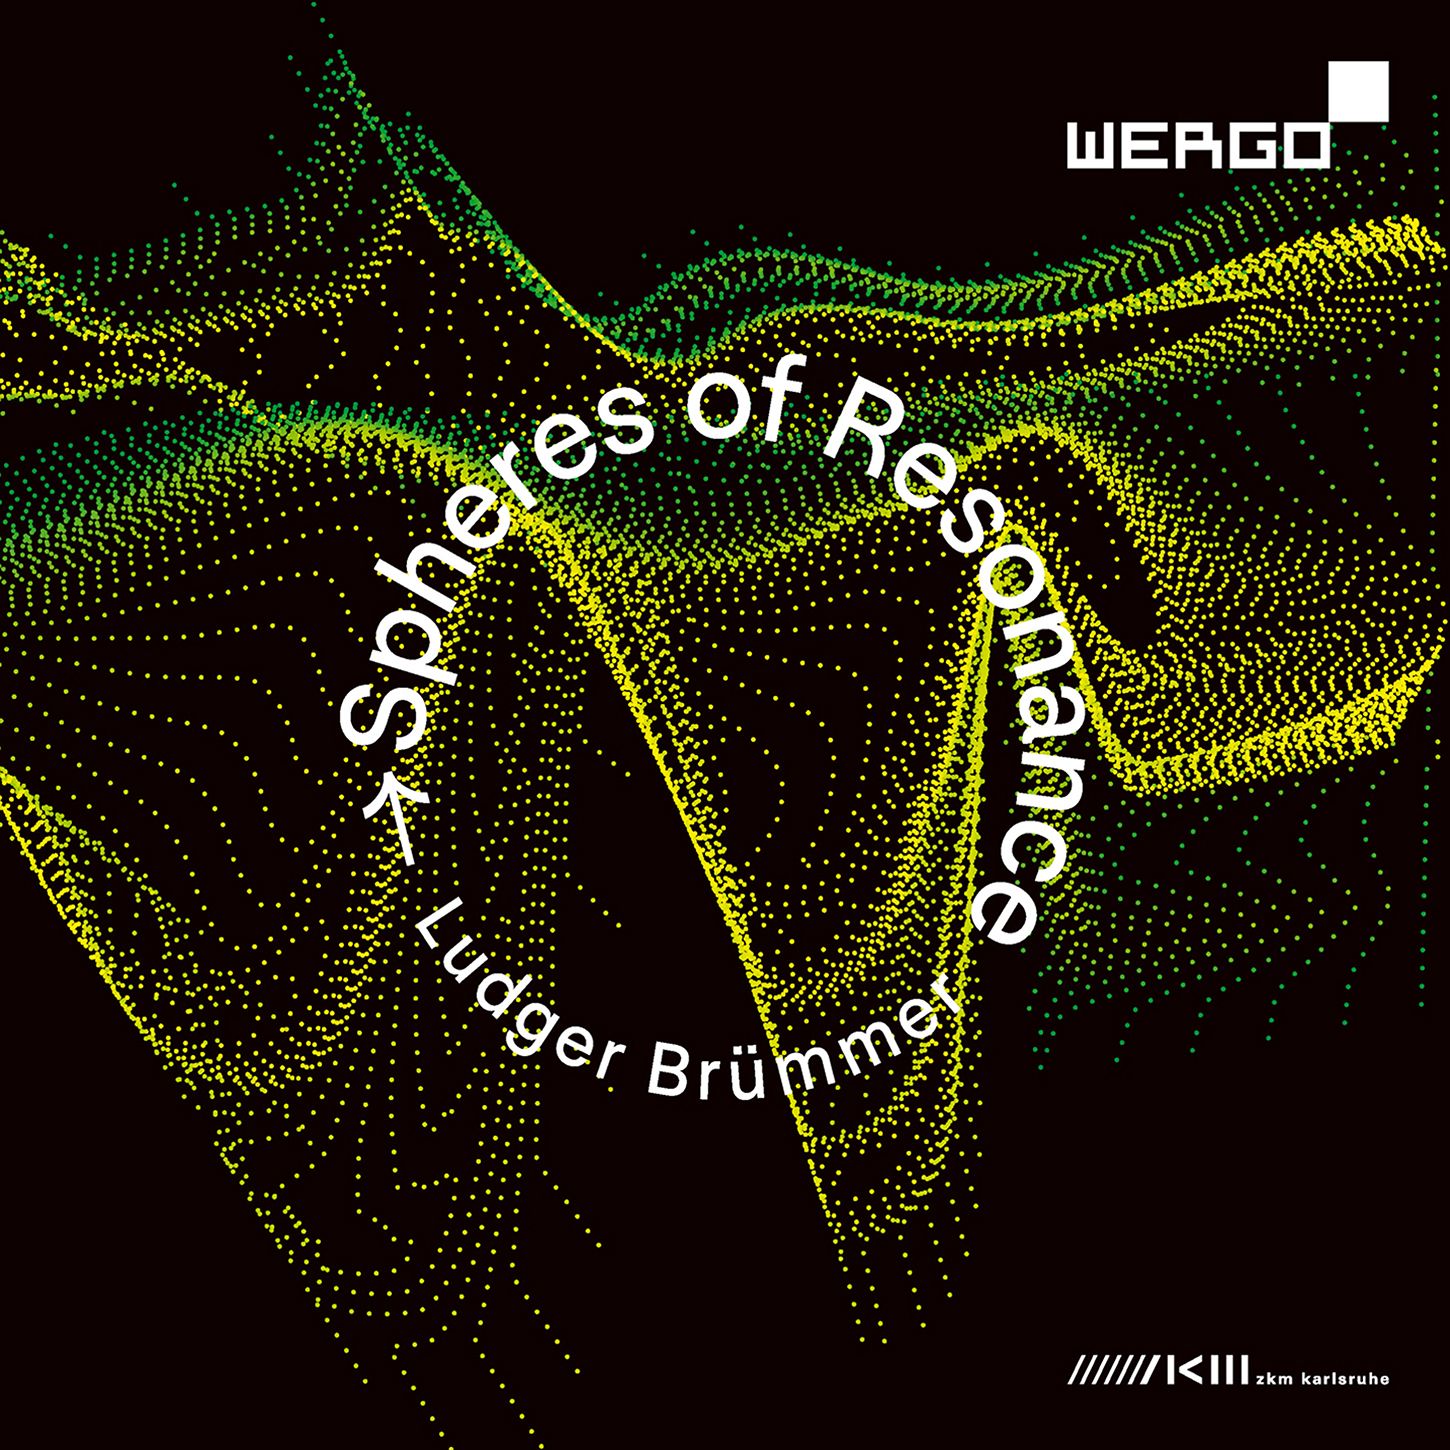 Spheres of Resonance: the music of Ludger Brümmer